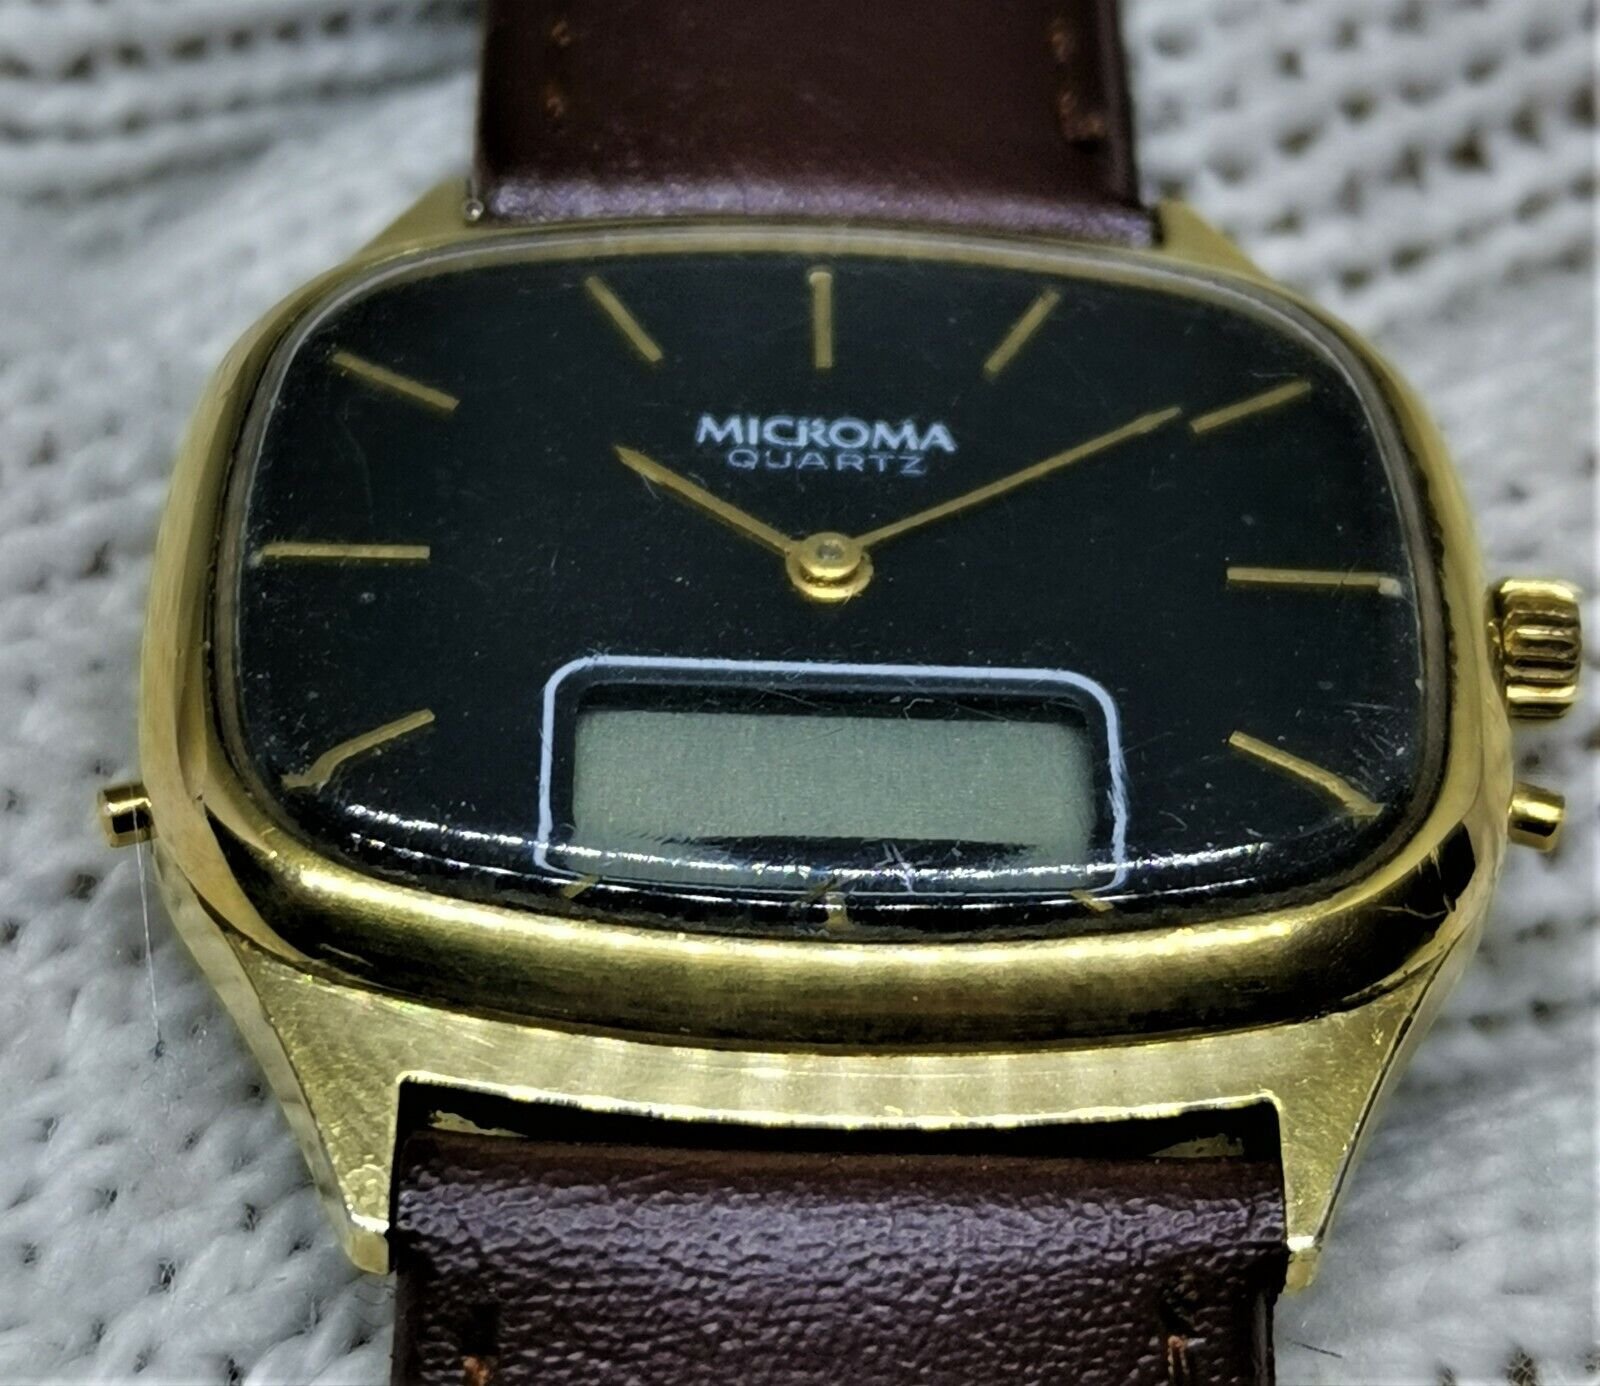 Наручные часы Microma Vintage Digital Watch - Gold Color - Read Description  - 144506944433 - купить на eBay.com (США) с доставкой в Украину |  Megazakaz.com